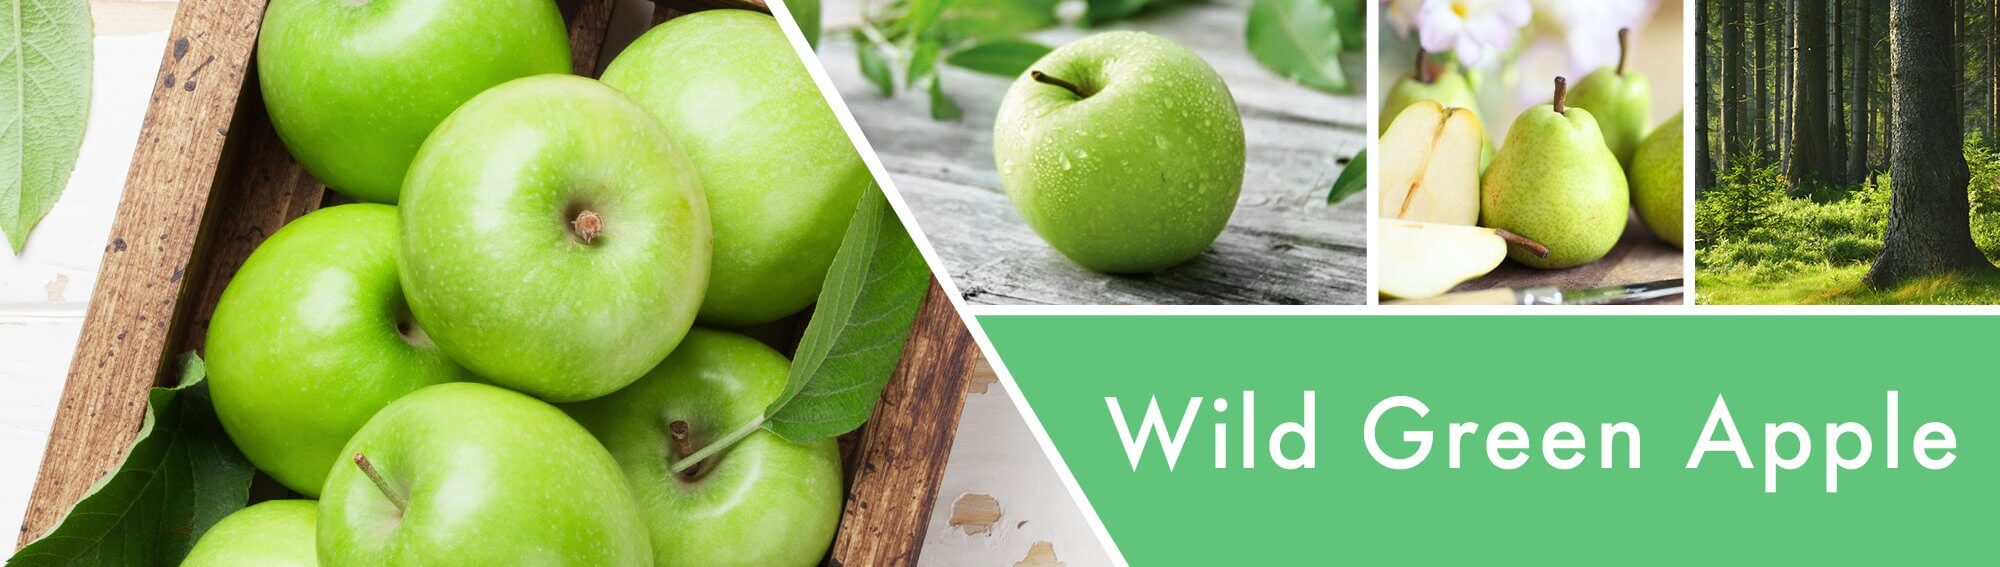 Wild-Green-Apple-Banner